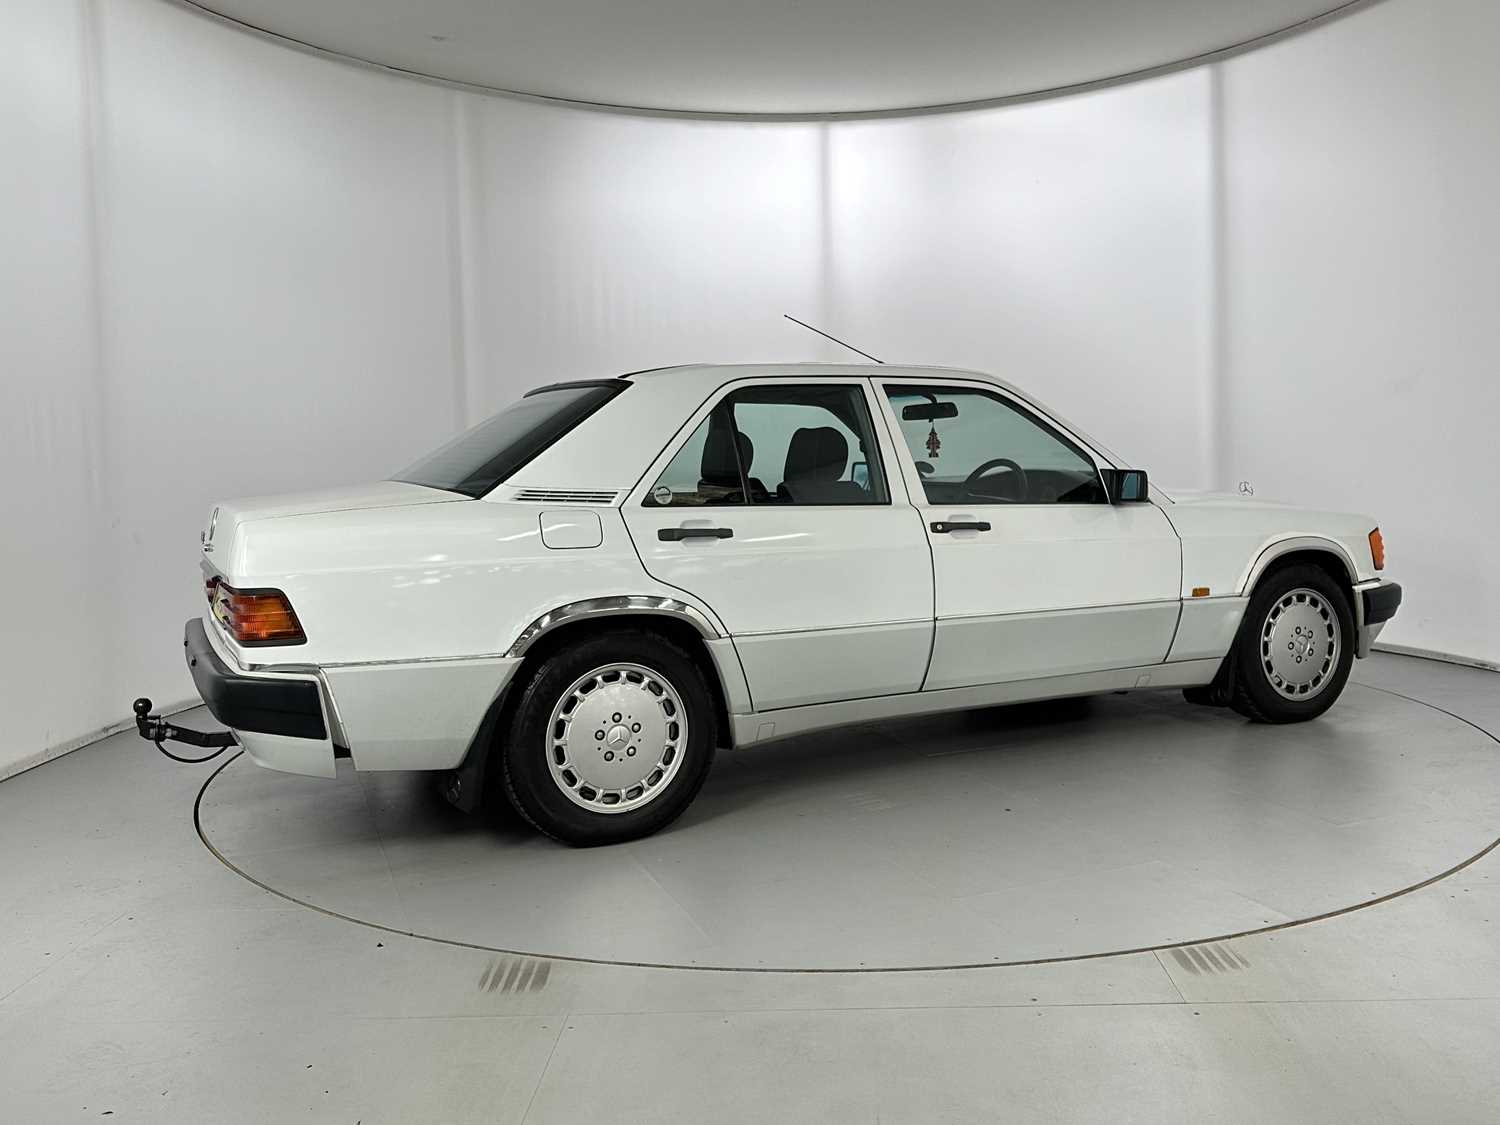 1989 Mercedes-Benz 190E - Image 10 of 34